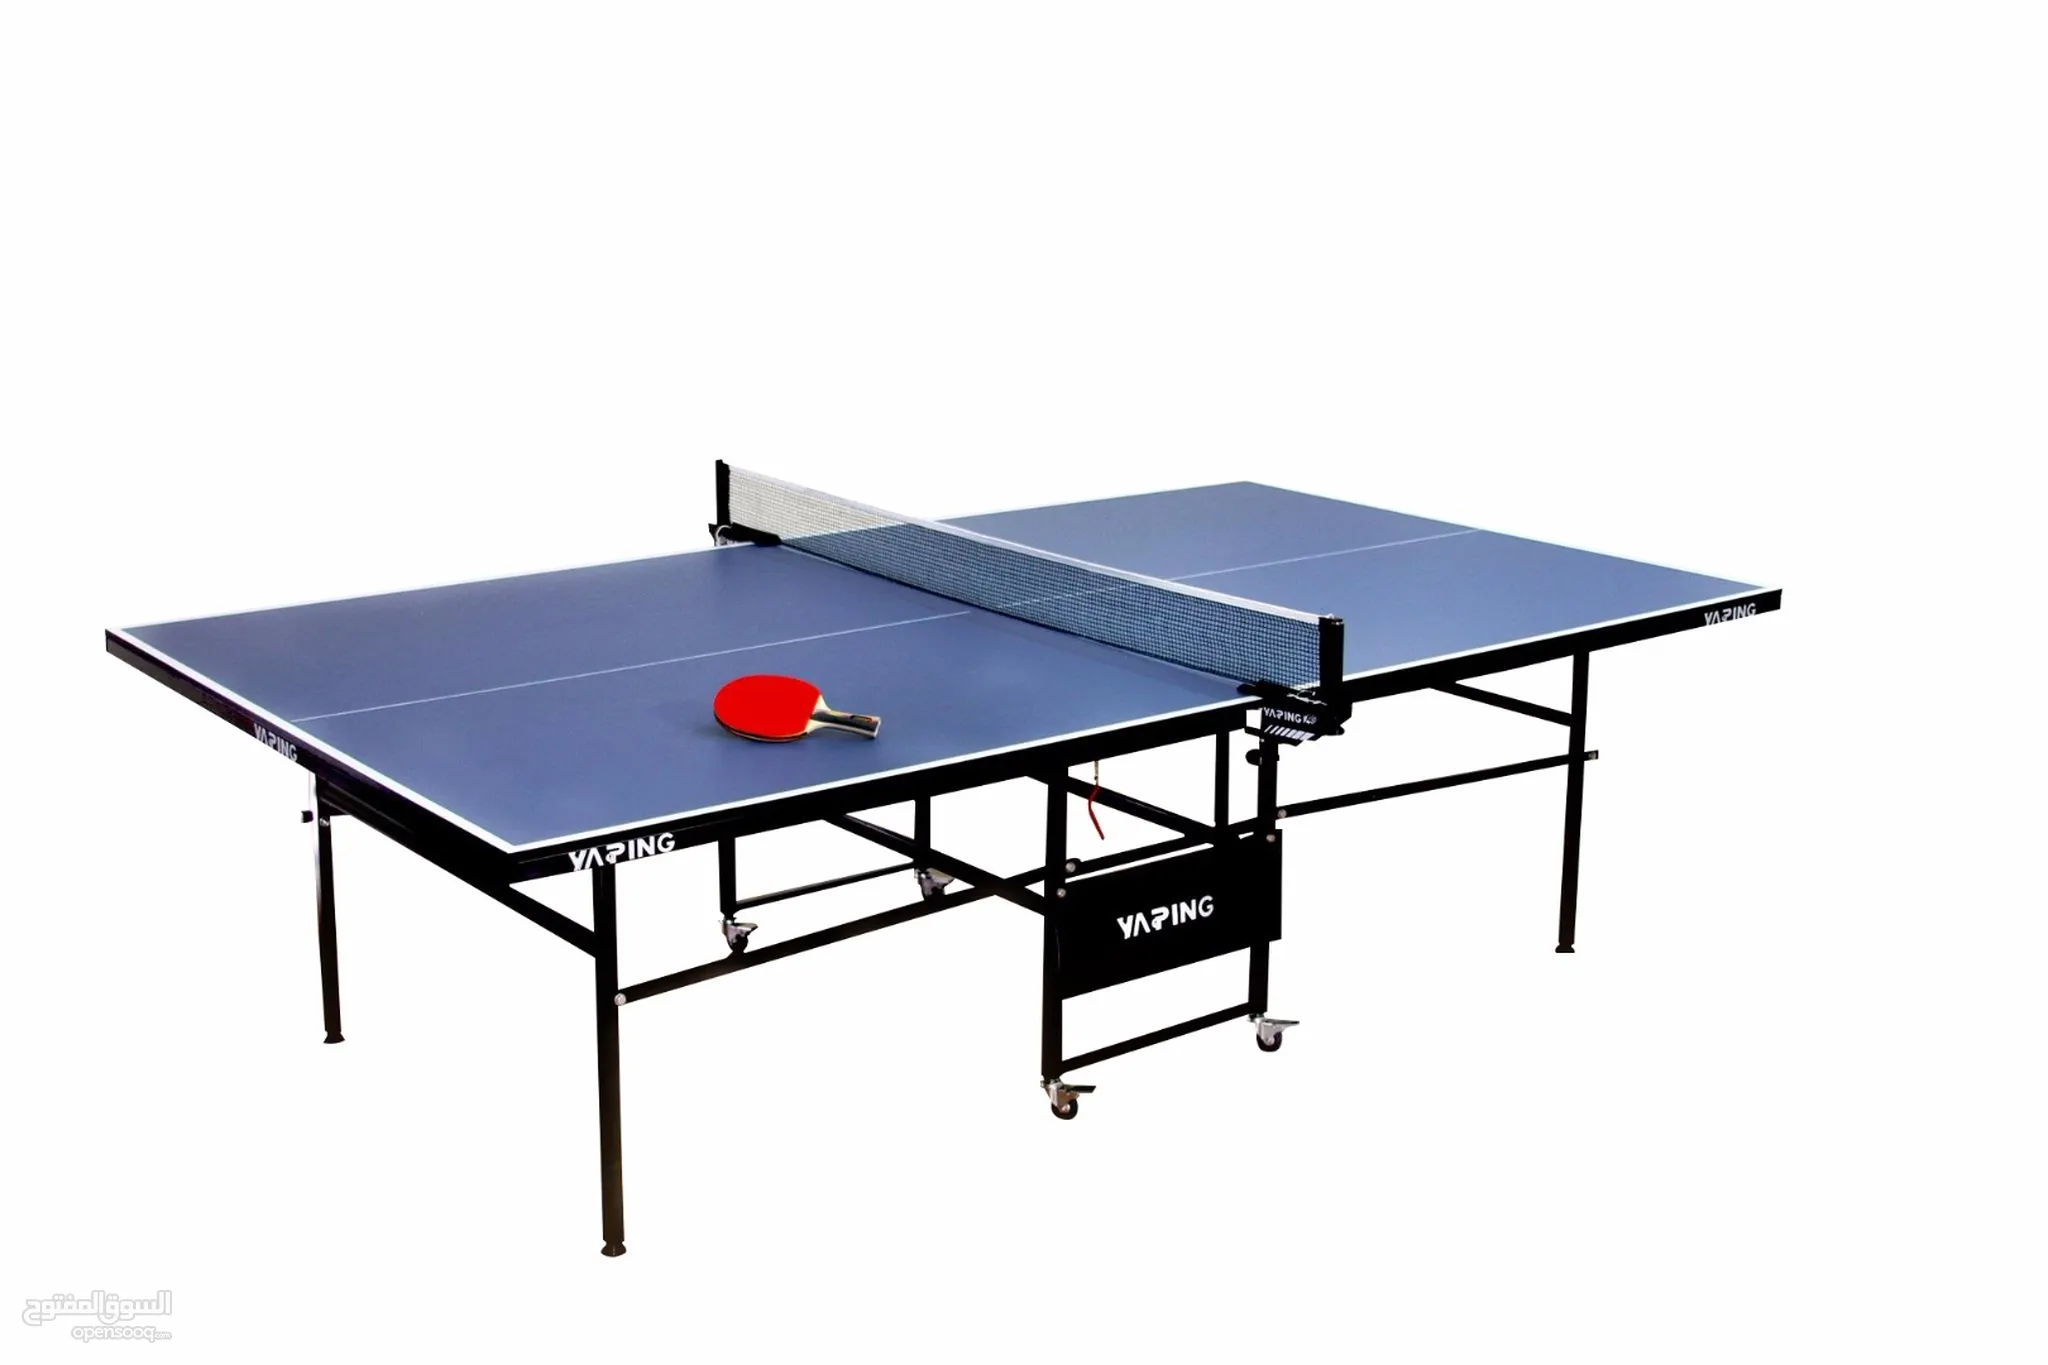 العاب مضرب للبيع في الأردن - كرة التنس : كرة الريشة, الطاولة : الاسكواش |  السوق المفتوح